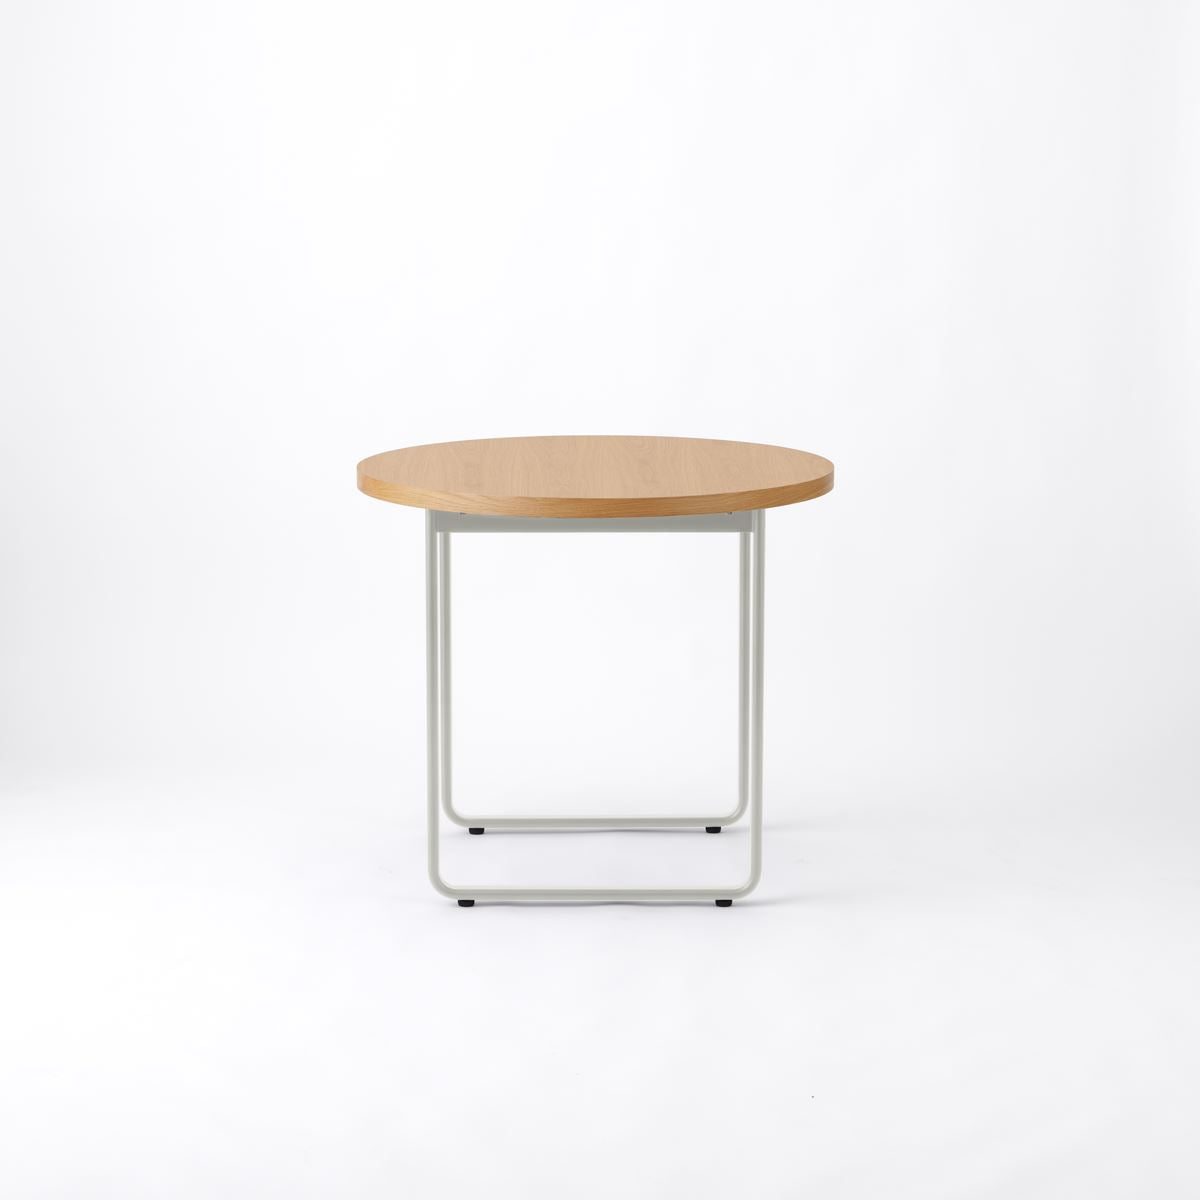 KUUM Table Φ850 - オーク突板ナチュラル / クーム  テーブル